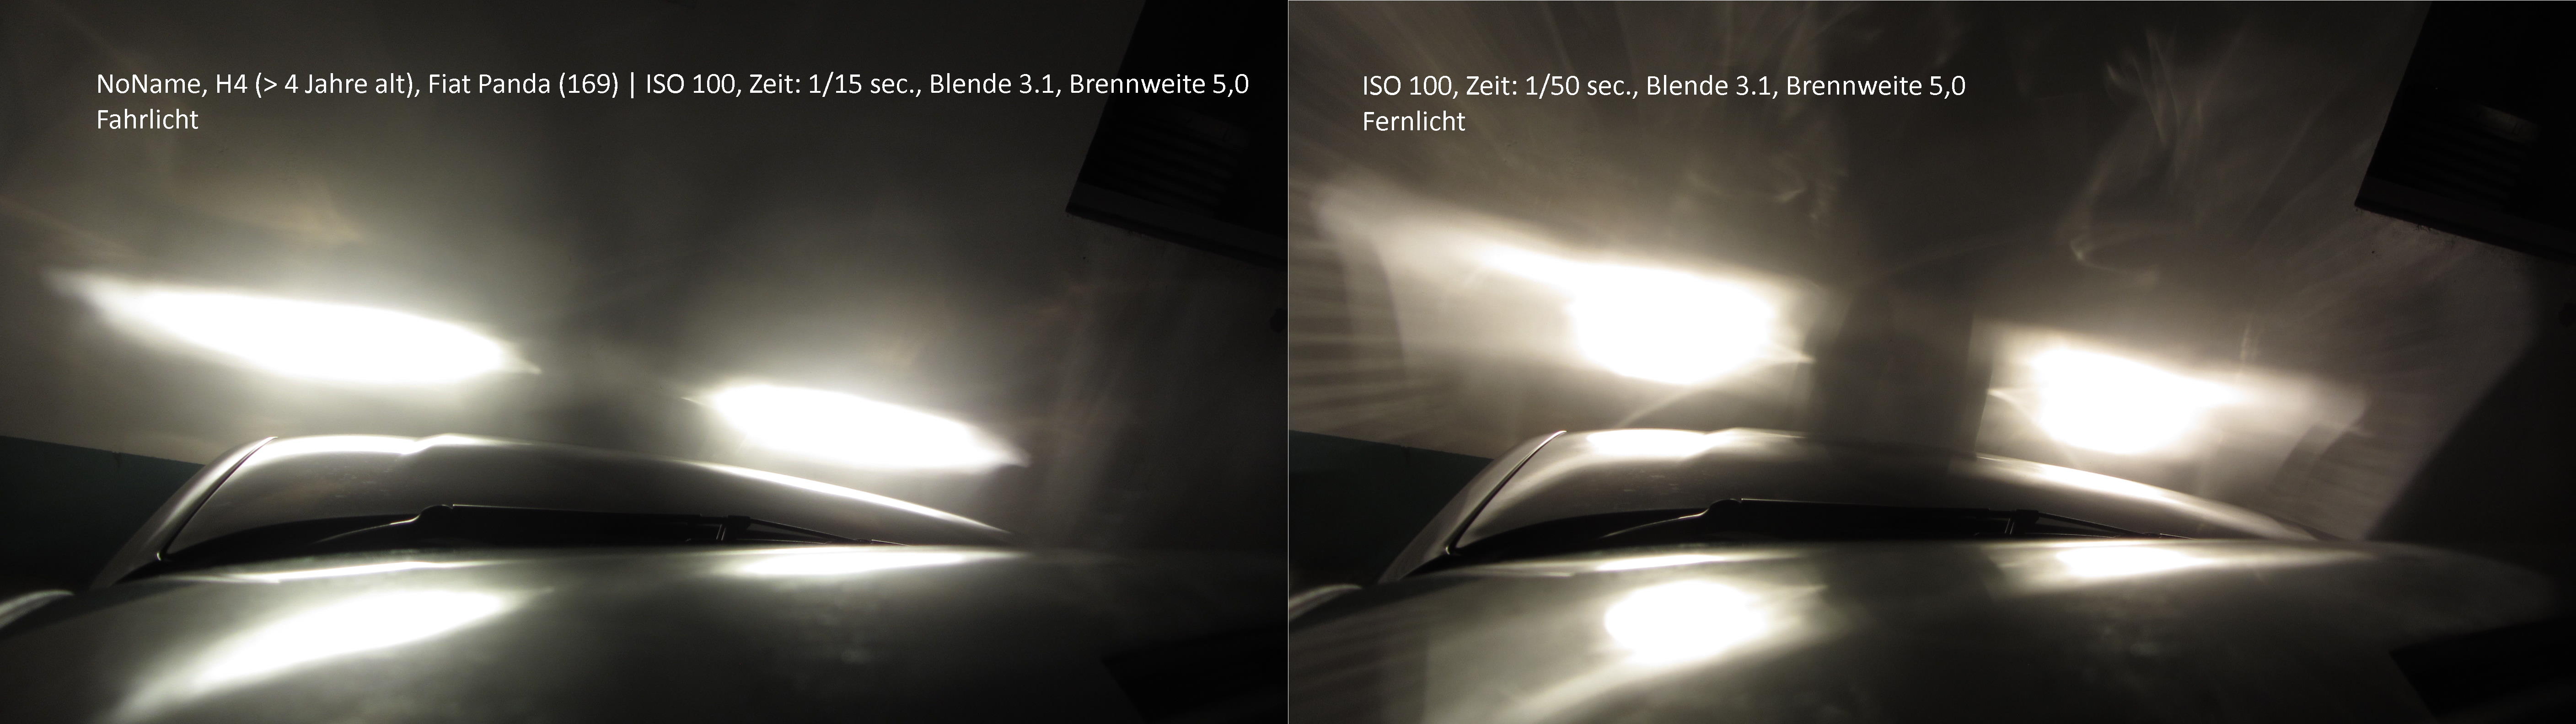 LED anstelle H7 - Seite 9 - Ausstattungen & Umbauten - Audi A2